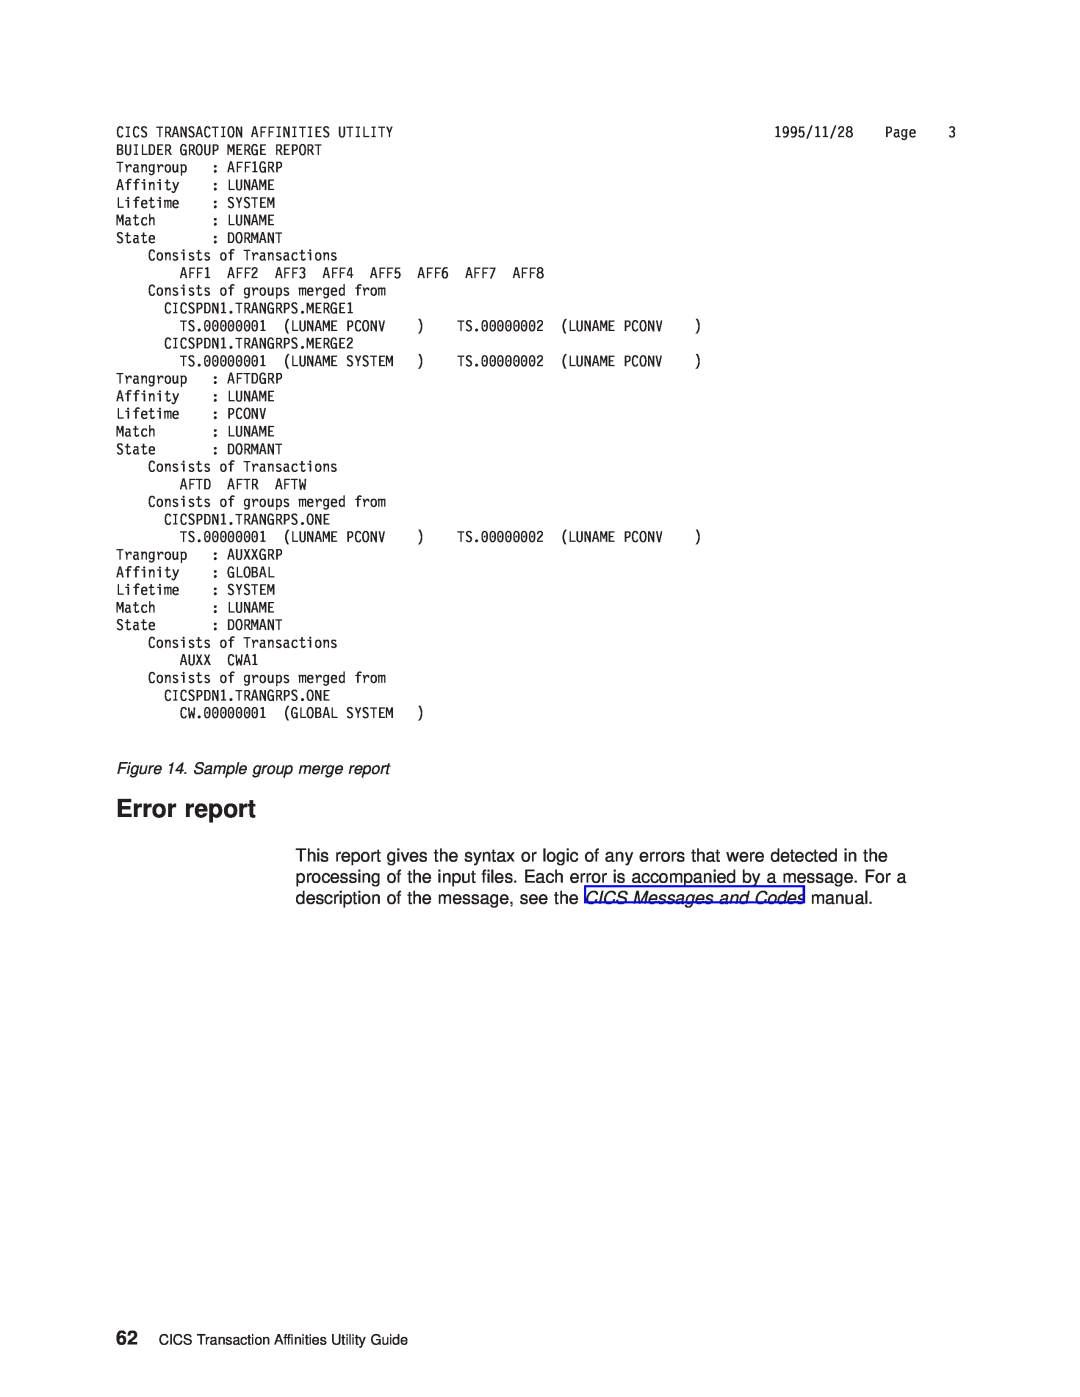 IBM OS manual Error report, Sample group merge report 